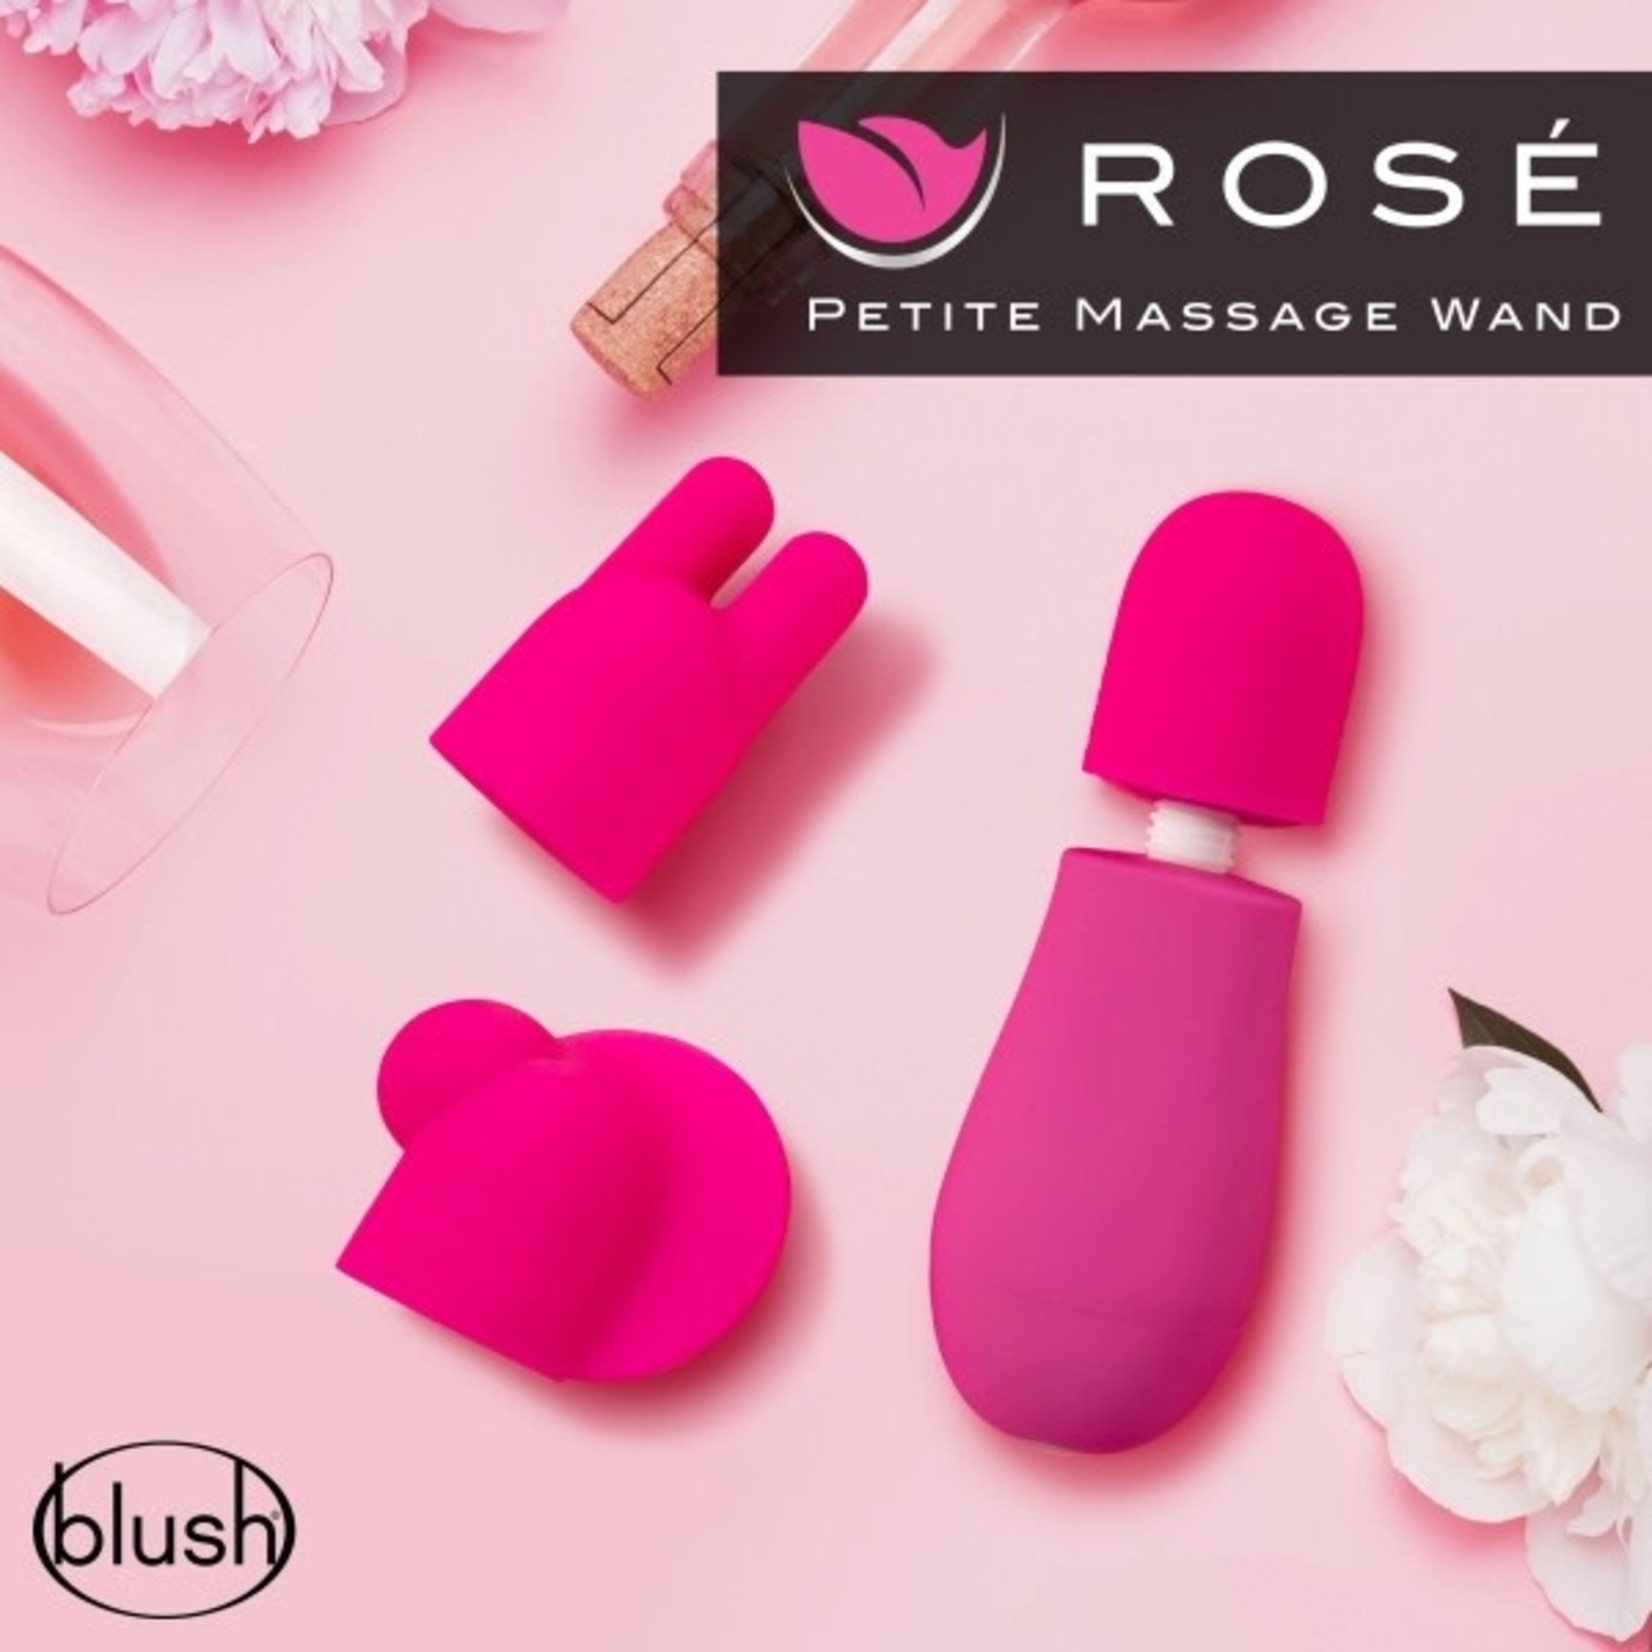 BLUSH BLUSH - ROSE - PETITE MASSAGE WAND - PINK